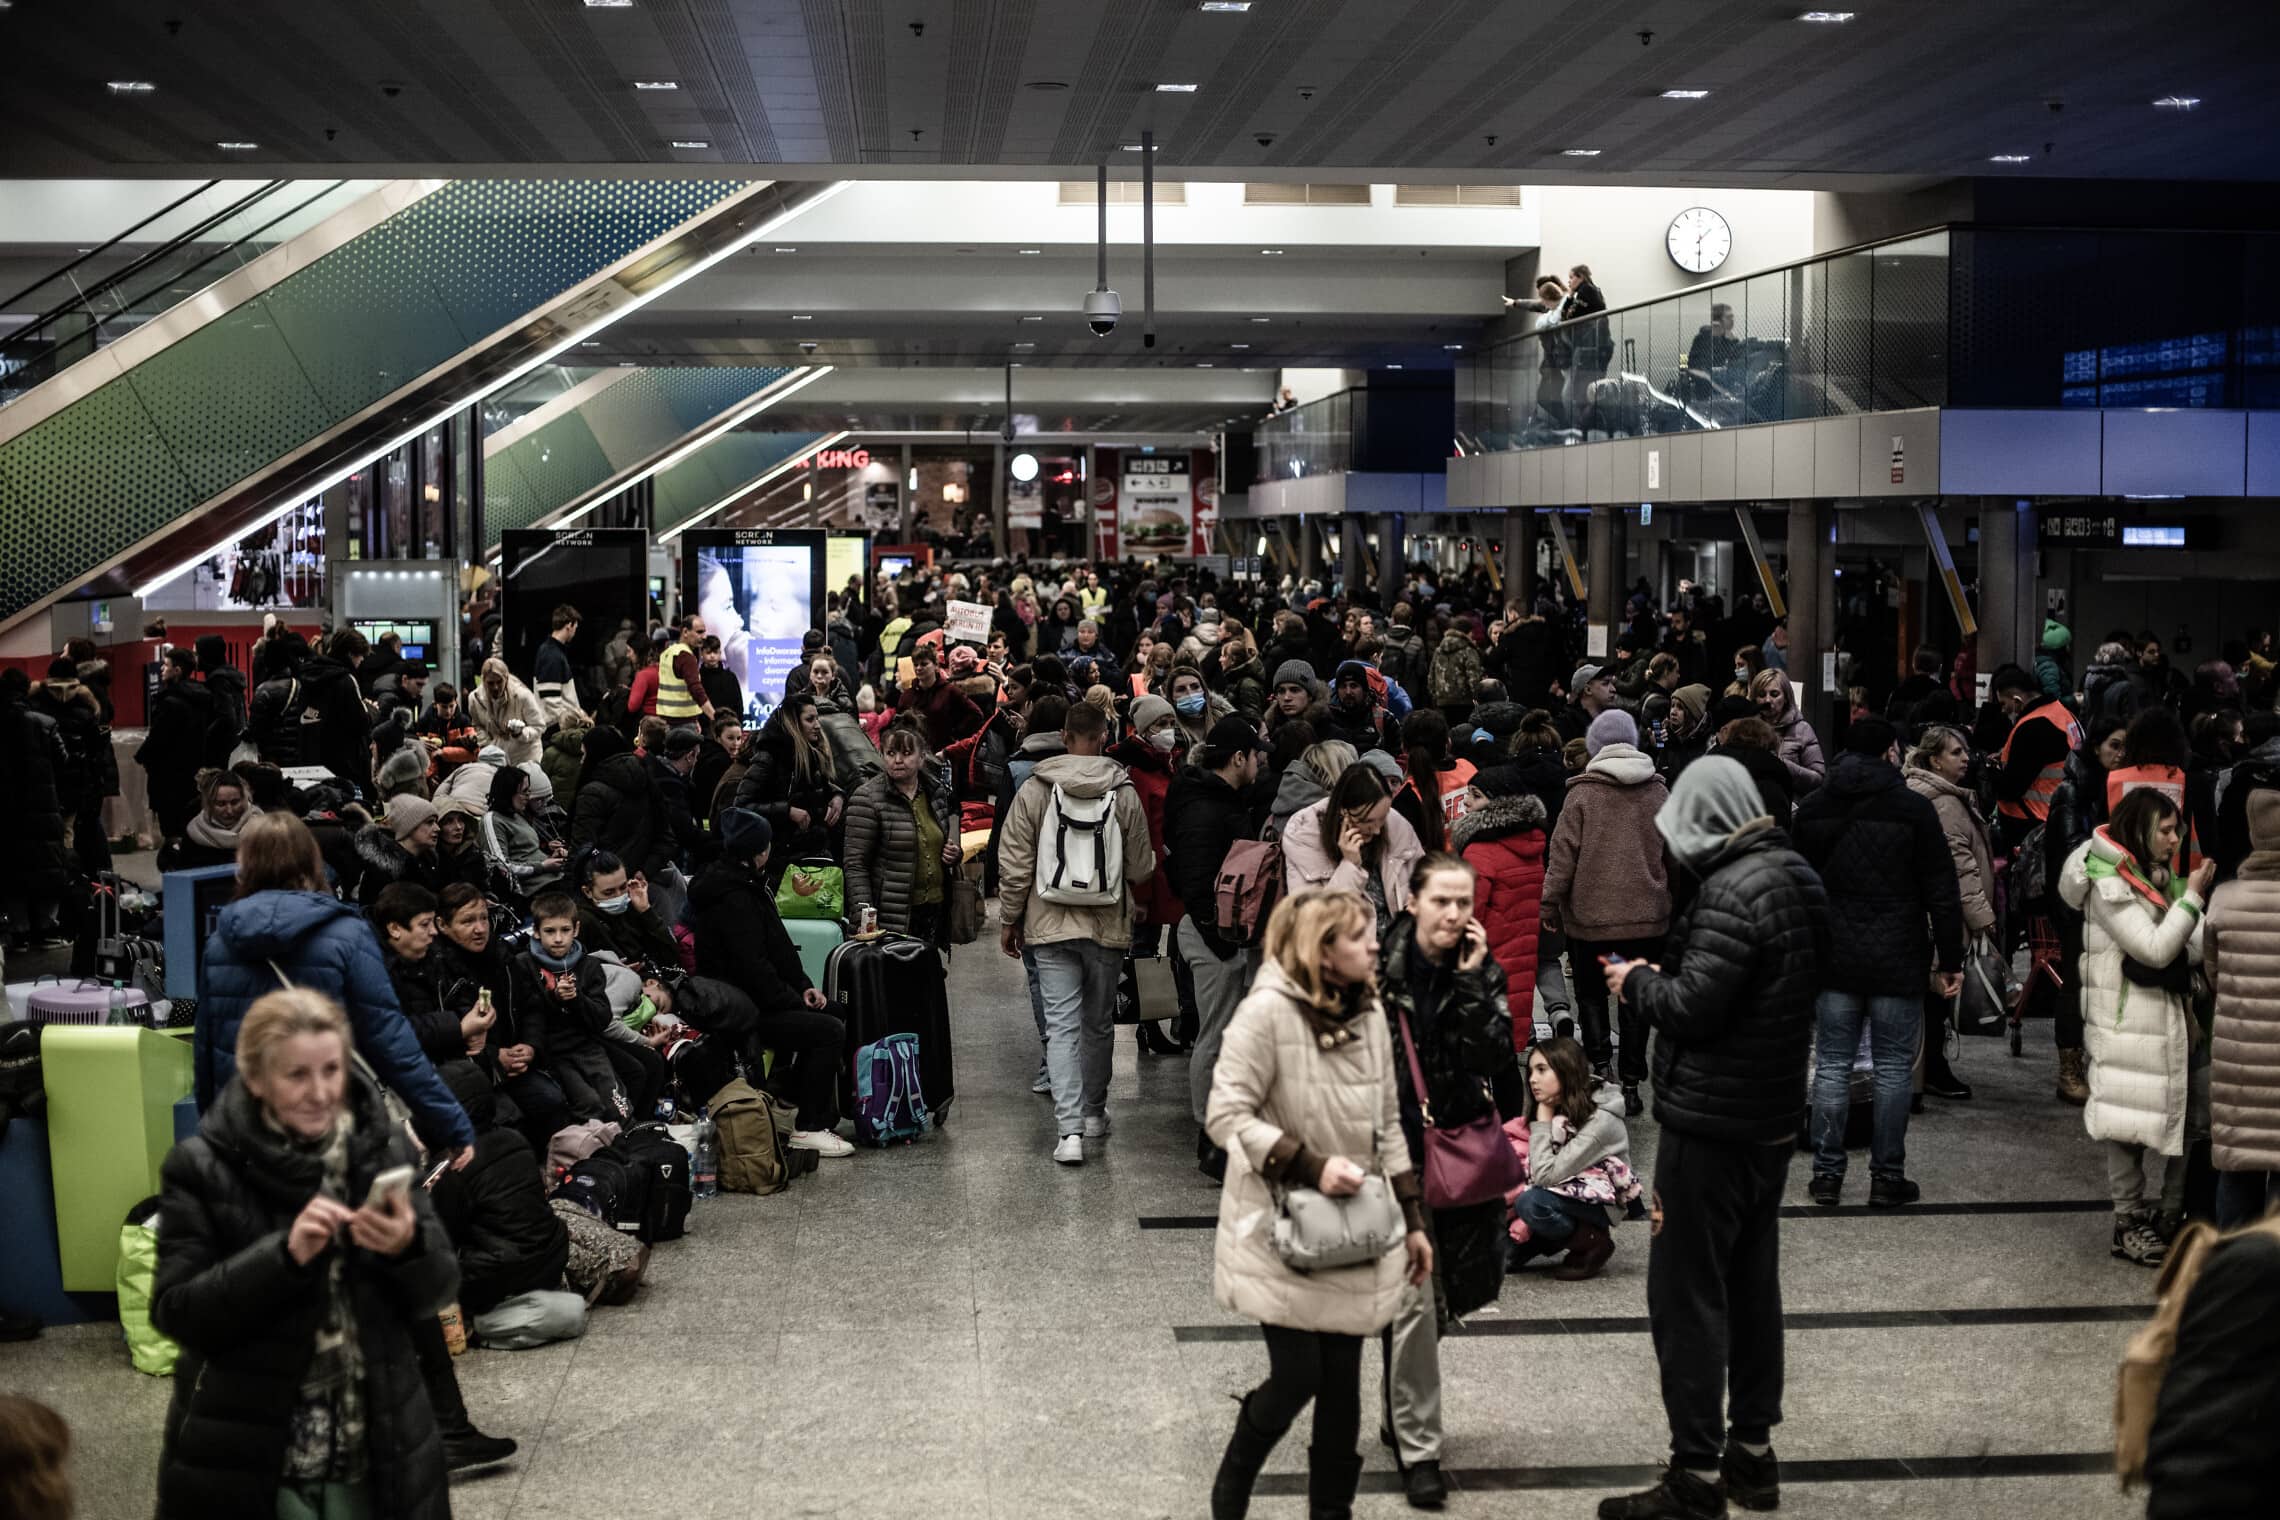 פליטים בתחנת הרכבת בקרקוב (צילום: גילעד שדה)